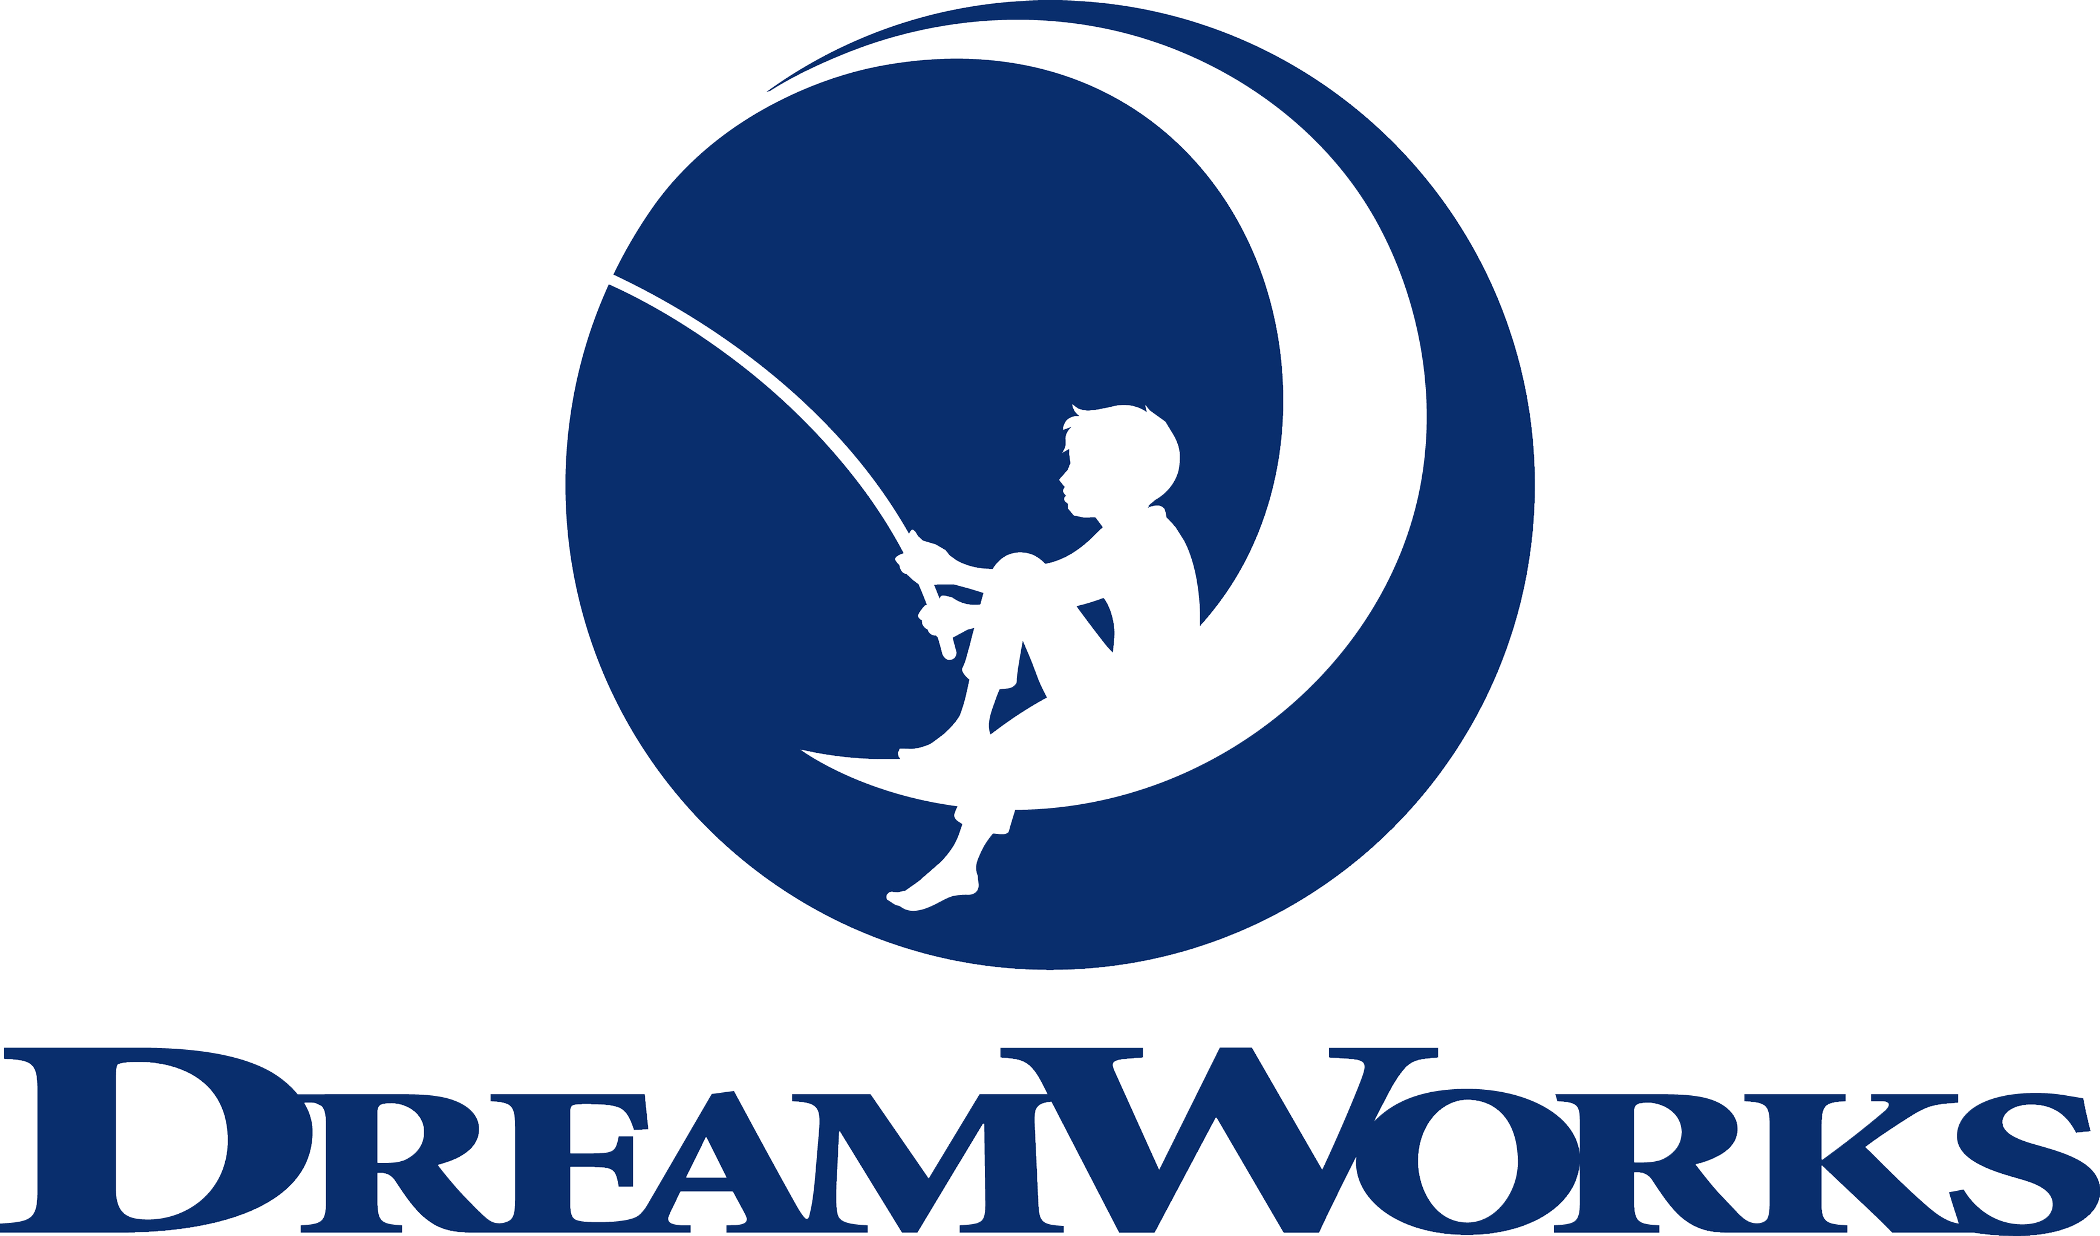 DreamWorks Logo [DreamWorks Animation SKG] png